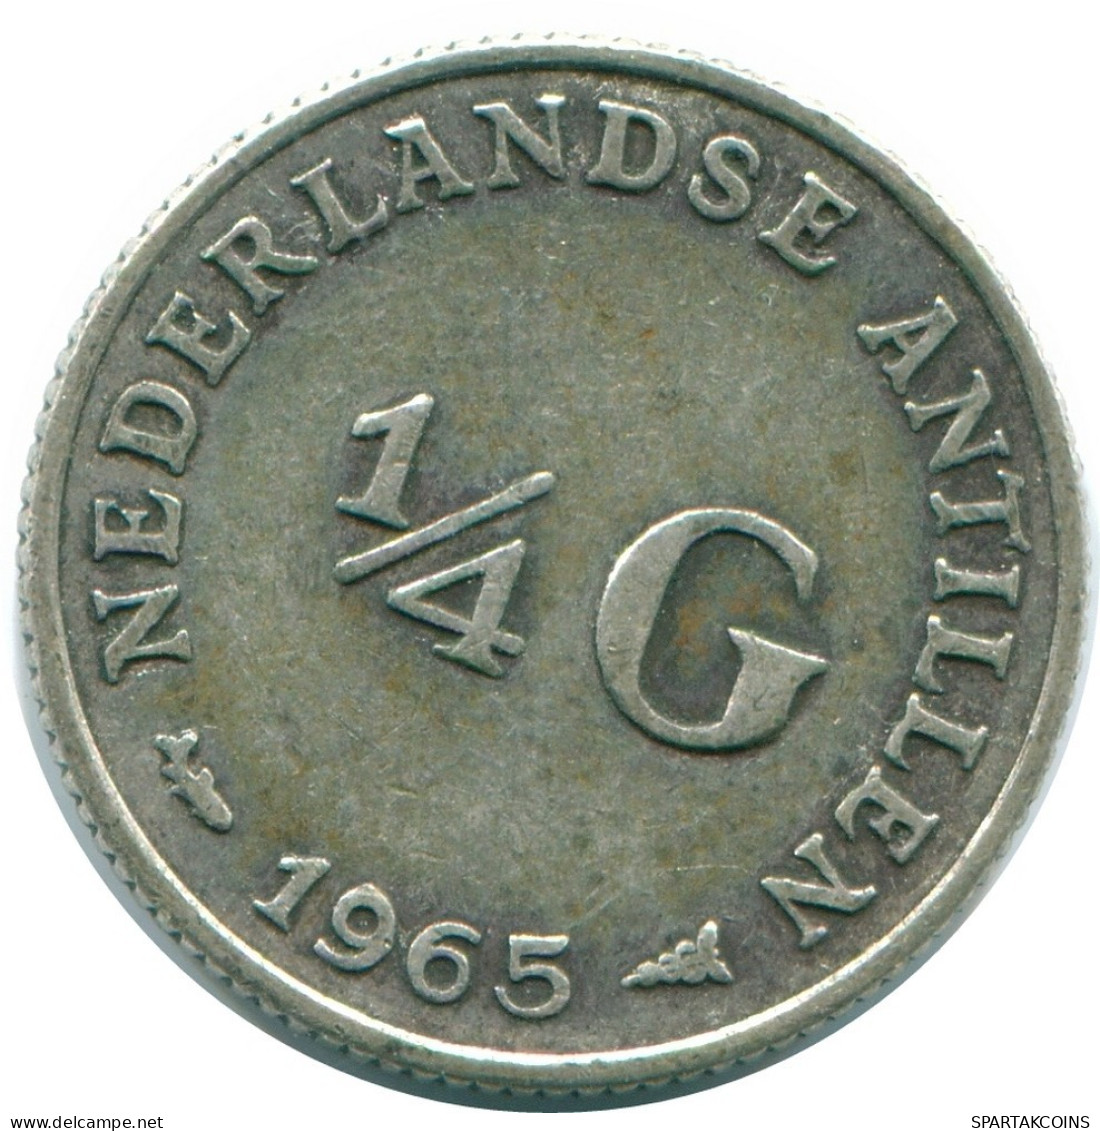 1/4 GULDEN 1965 ANTILLAS NEERLANDESAS PLATA Colonial Moneda #NL11358.4.E.A - Antillas Neerlandesas